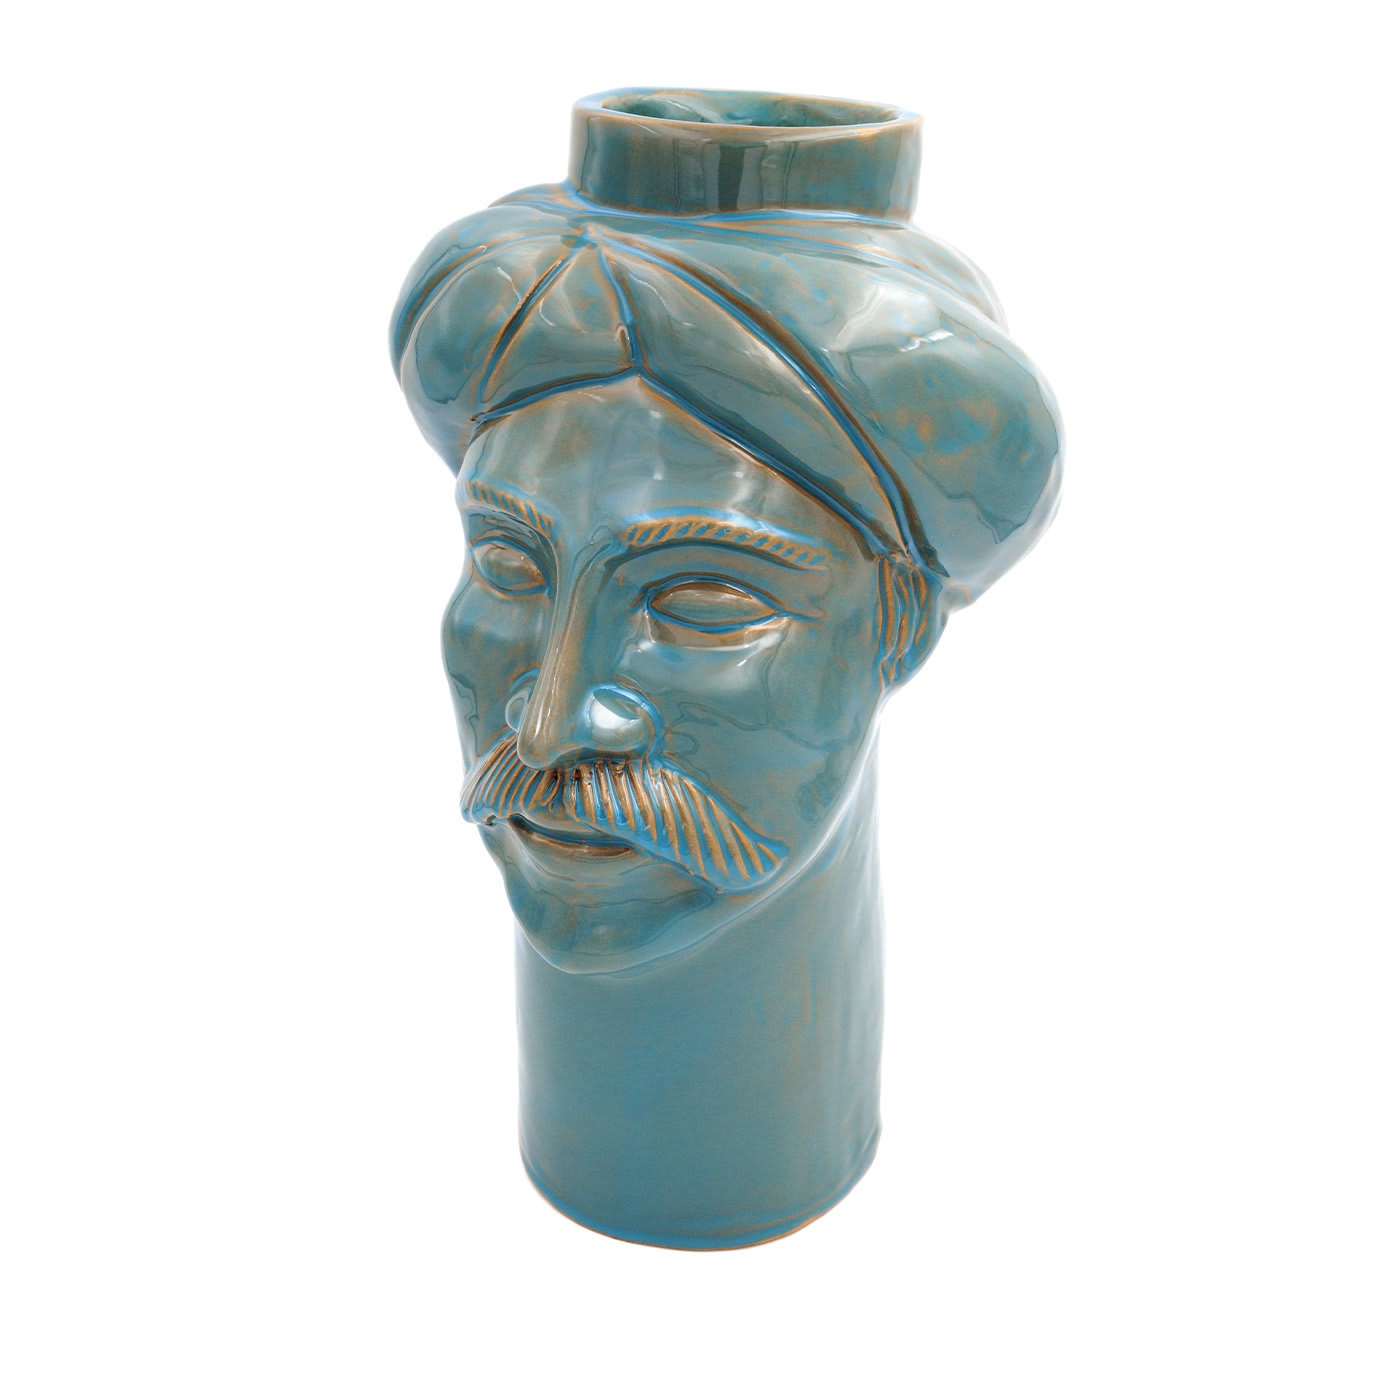 Solimano Blue-Brown Vase - Crita Ceramiche